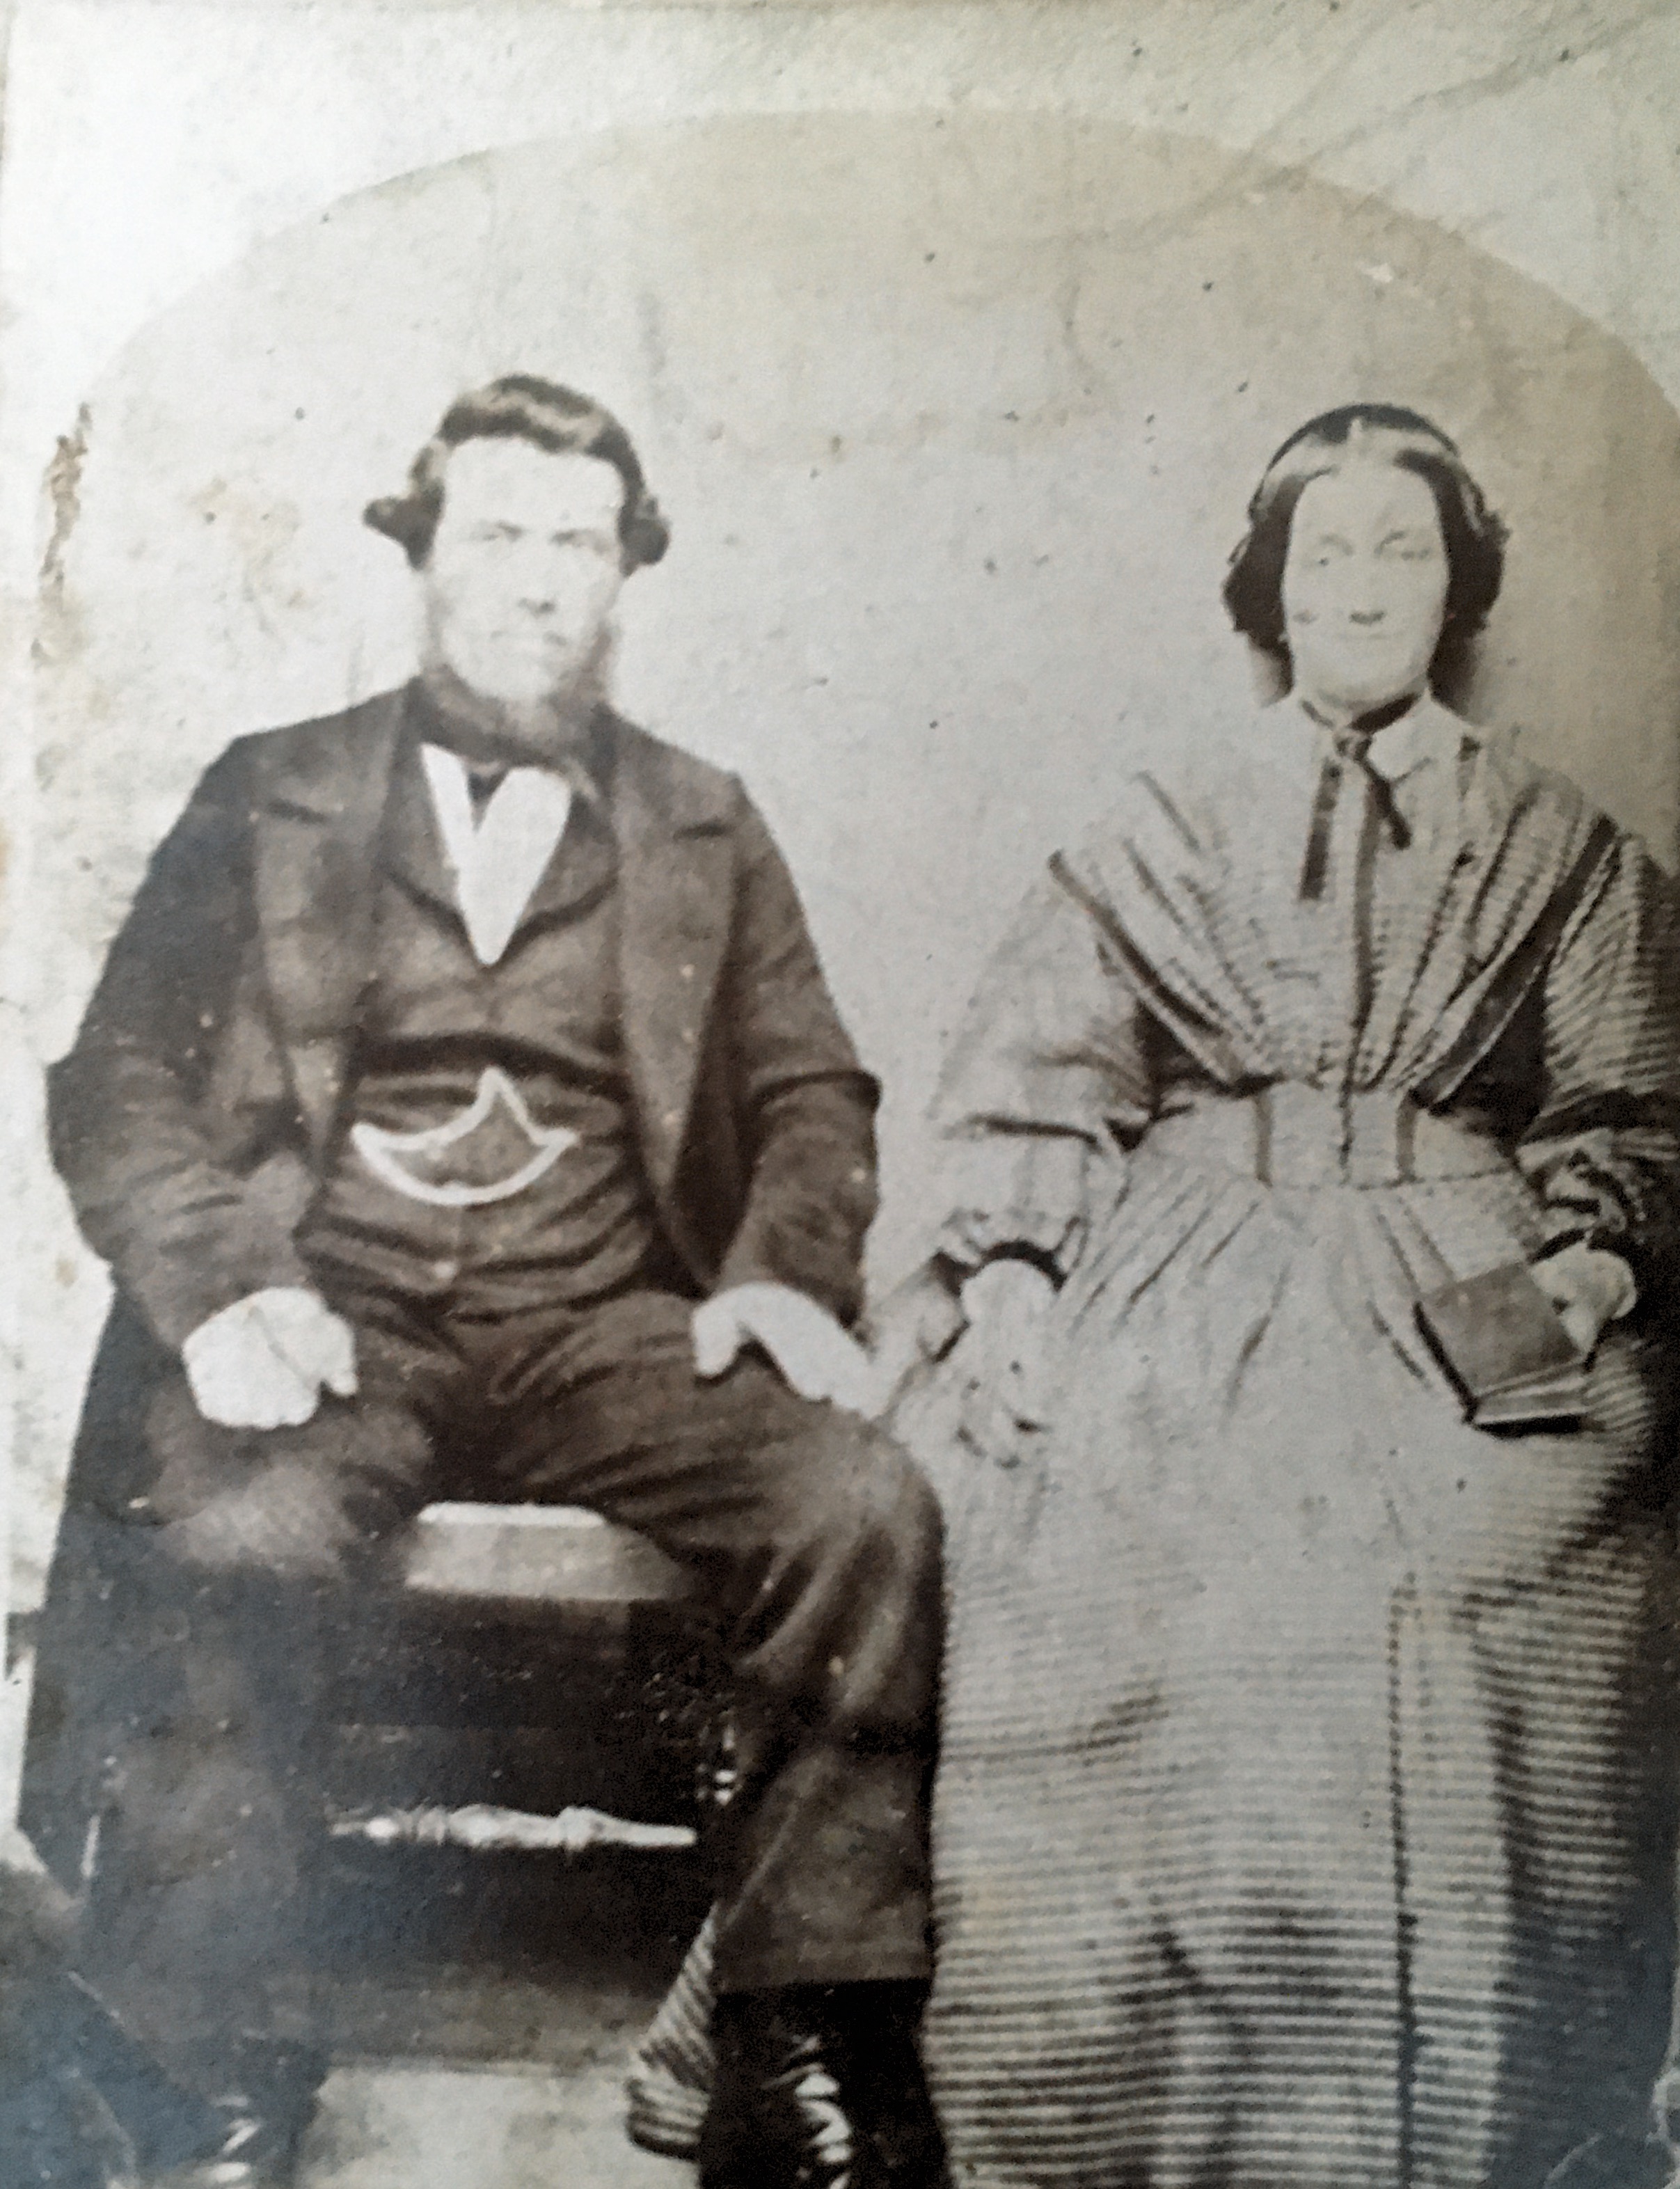 Great great grandpa and grandma Lee Circa 1870